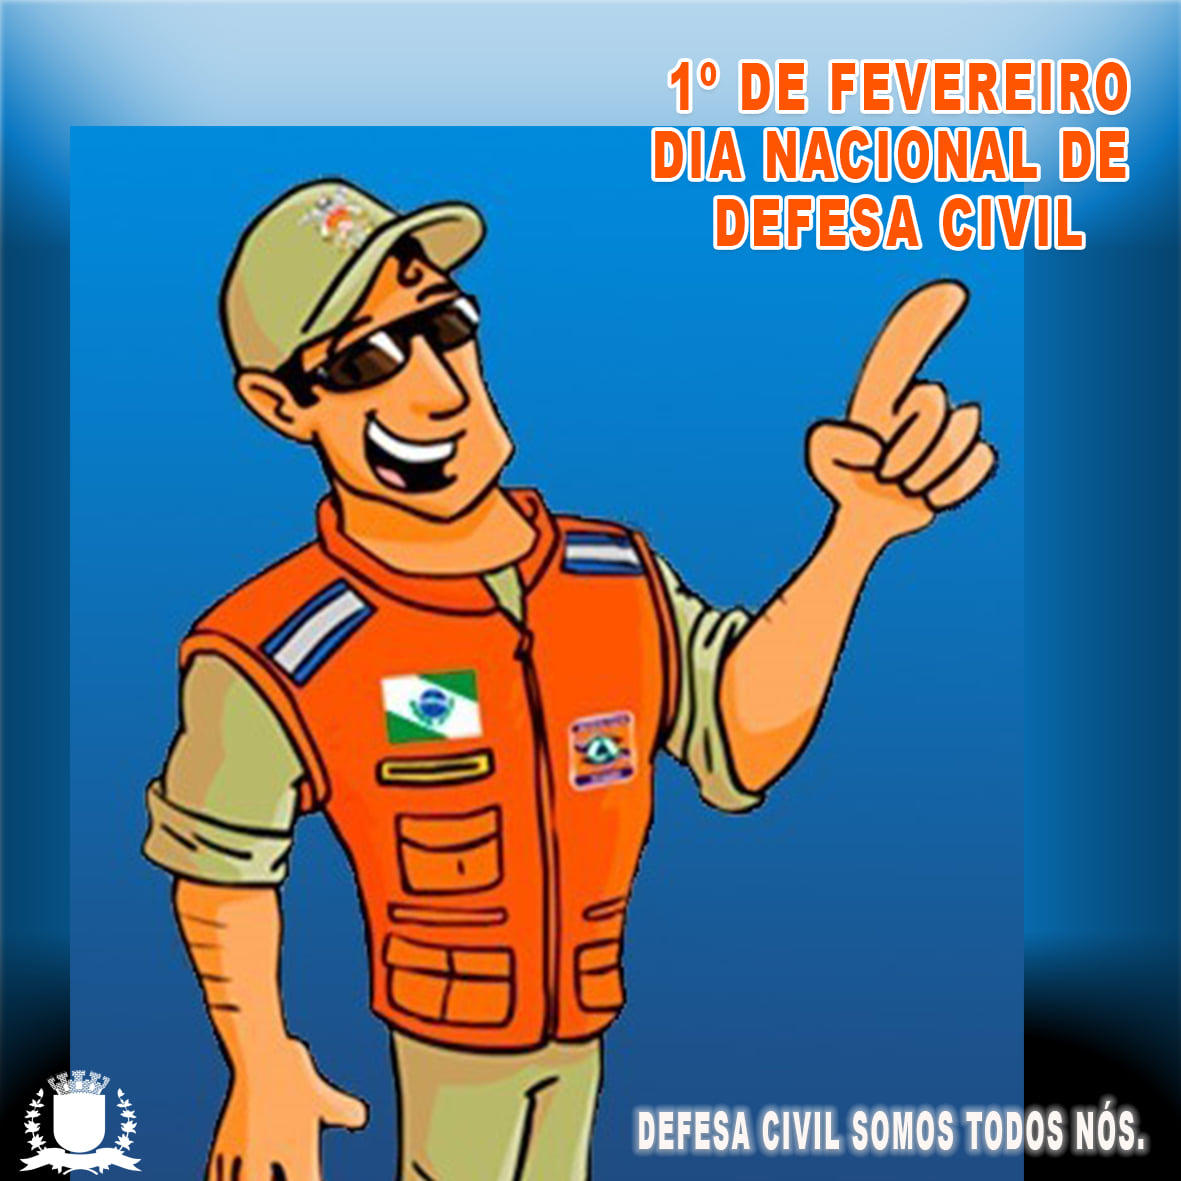 IMAGEM 01 DE FEVEREIRO DIA NACIONAL DA DEFESA CIVIL